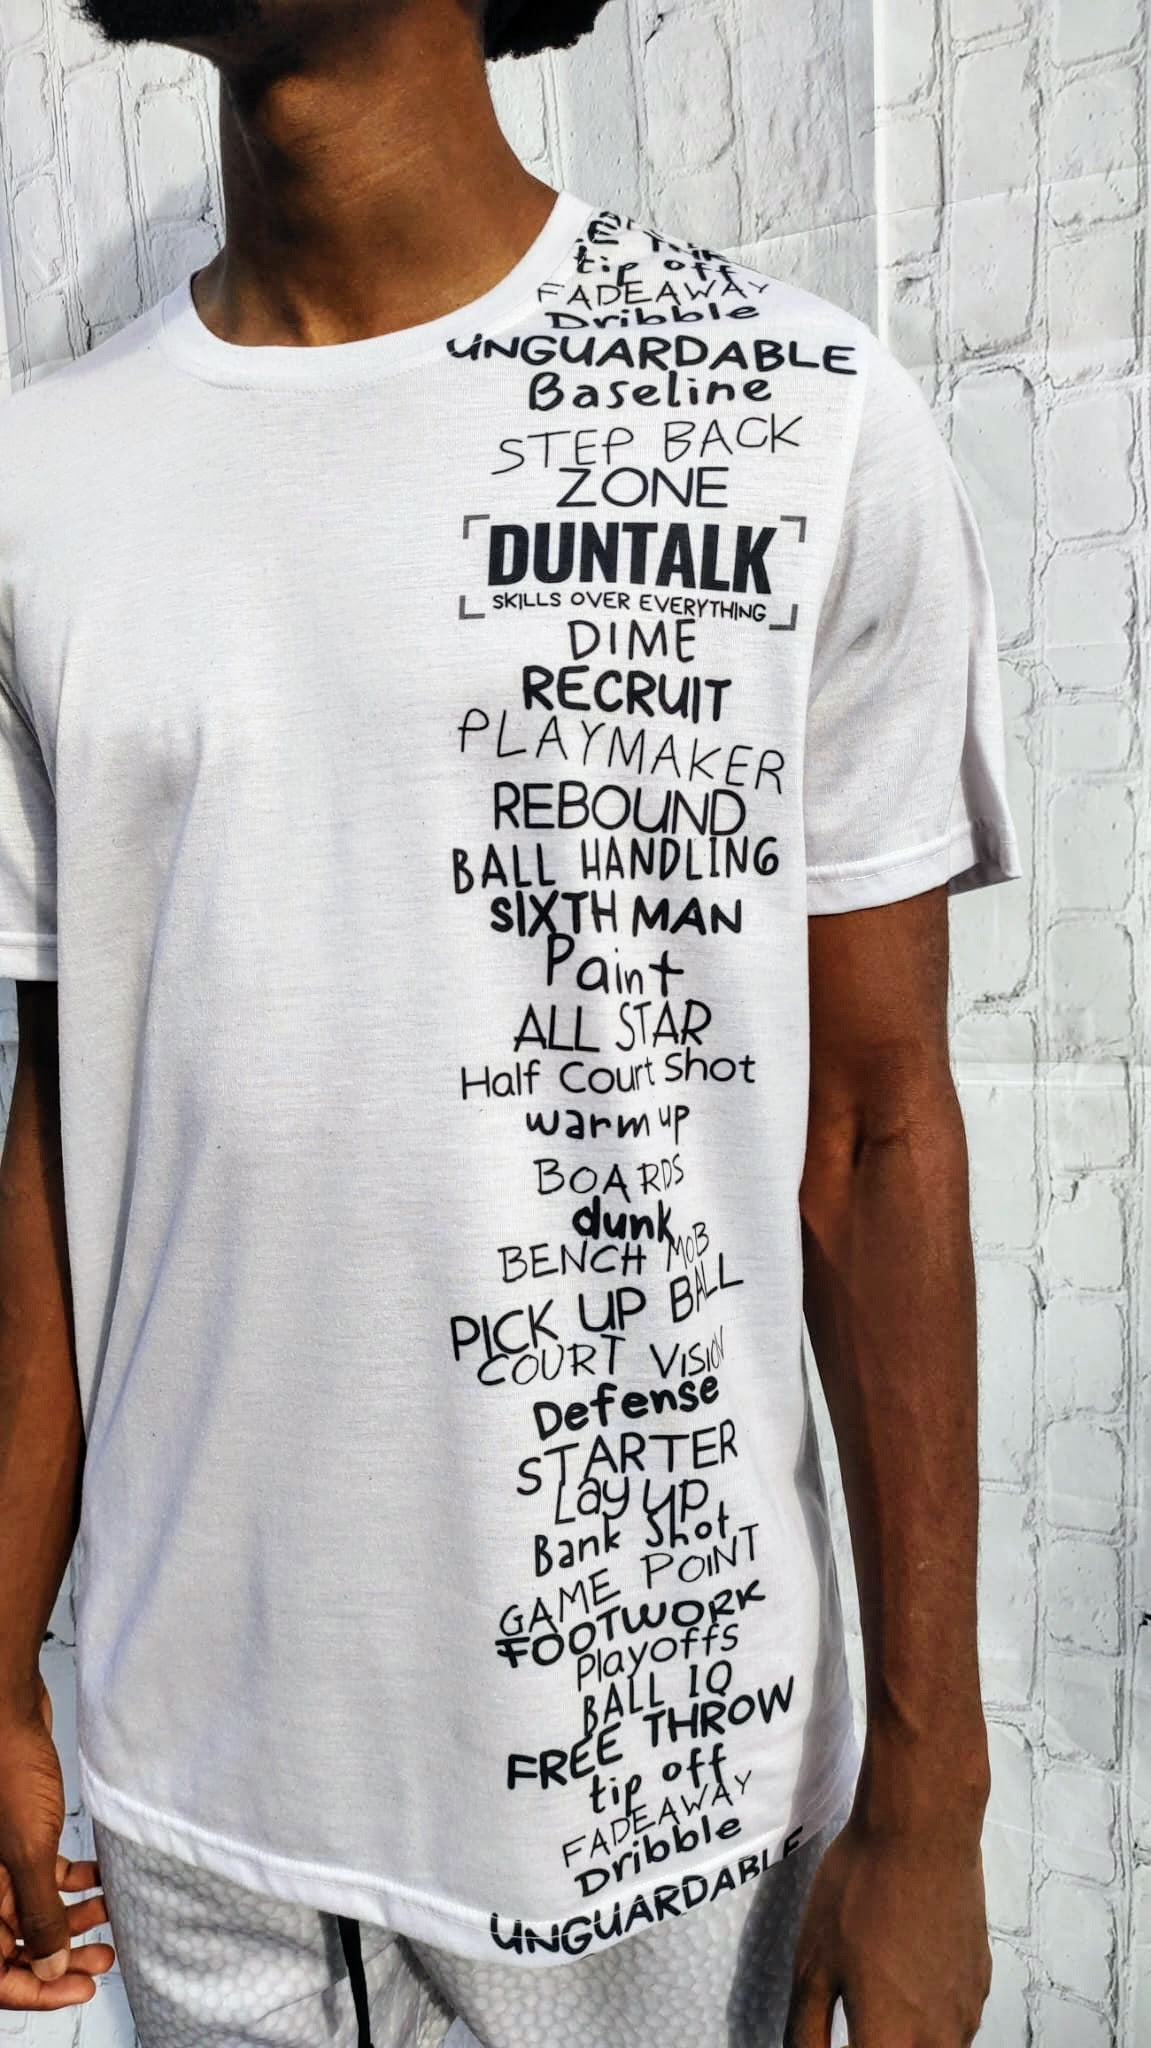 Duntalk "Baller" Basketball T-shirt